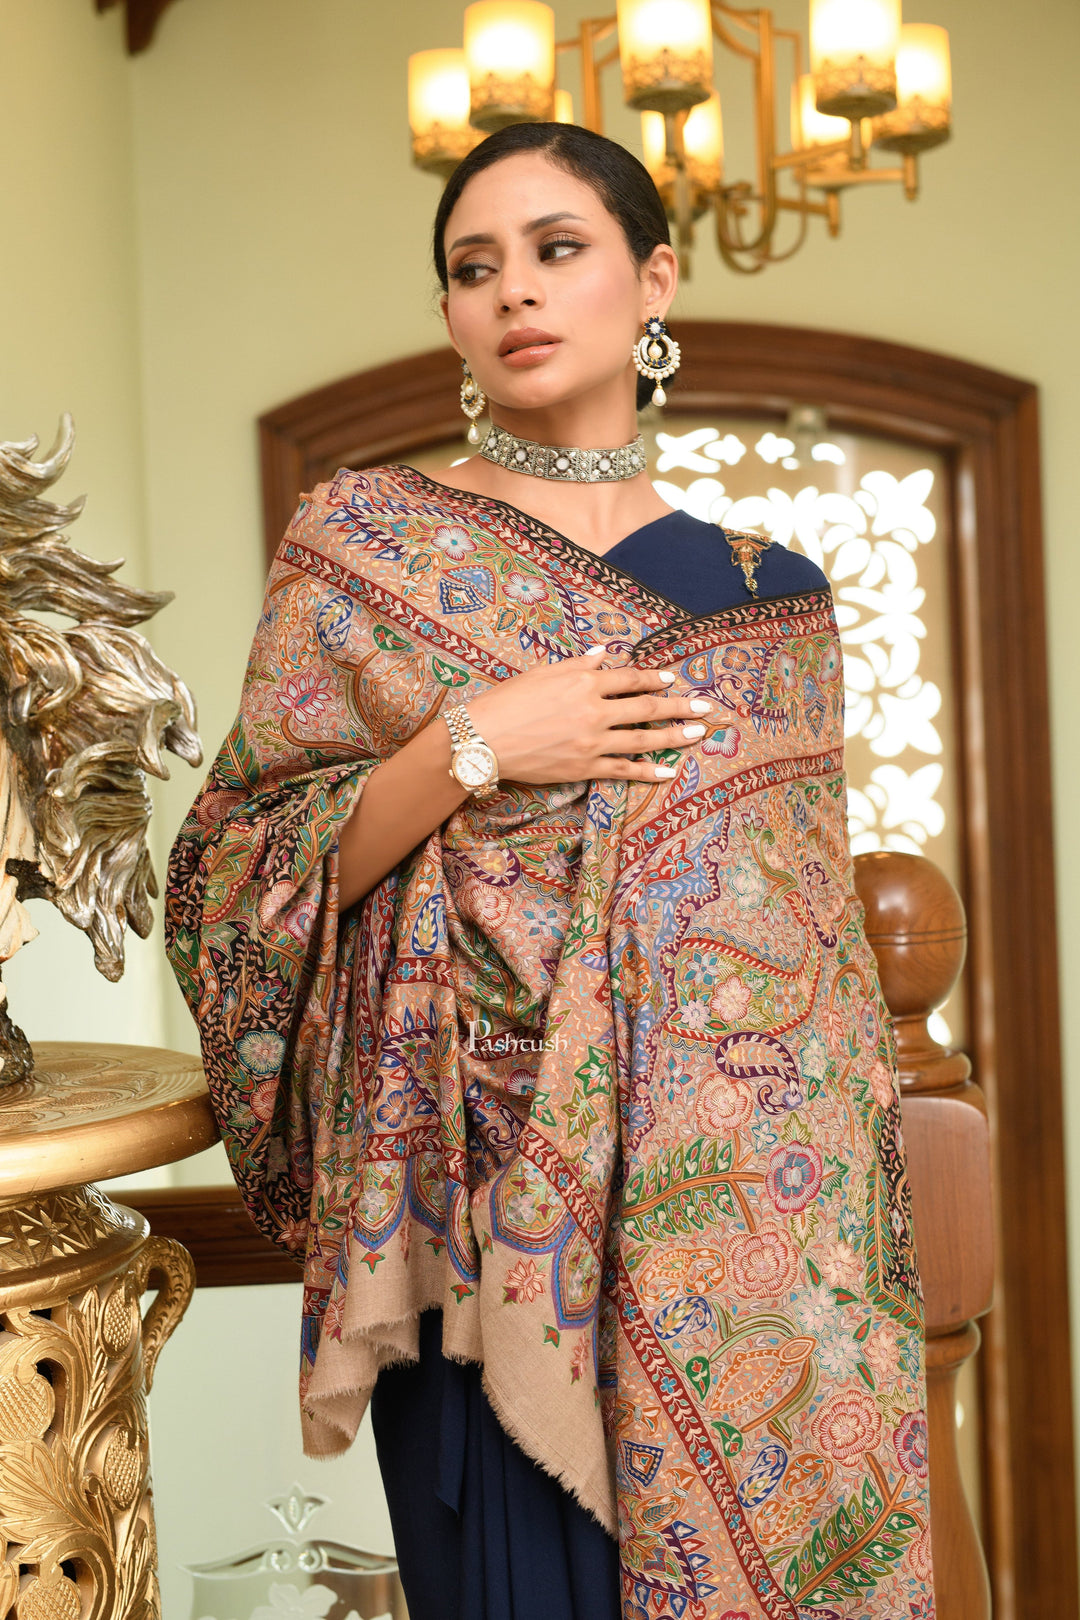 https://pashtush.in/cdn/shop/files/pashtush-pashmina-pashtush-womens-pure-pashmina-shawl-hand-painted-and-embroidered-kalamkari-design-multicolour-42554136887611.jpg?v=1691057400&width=1080